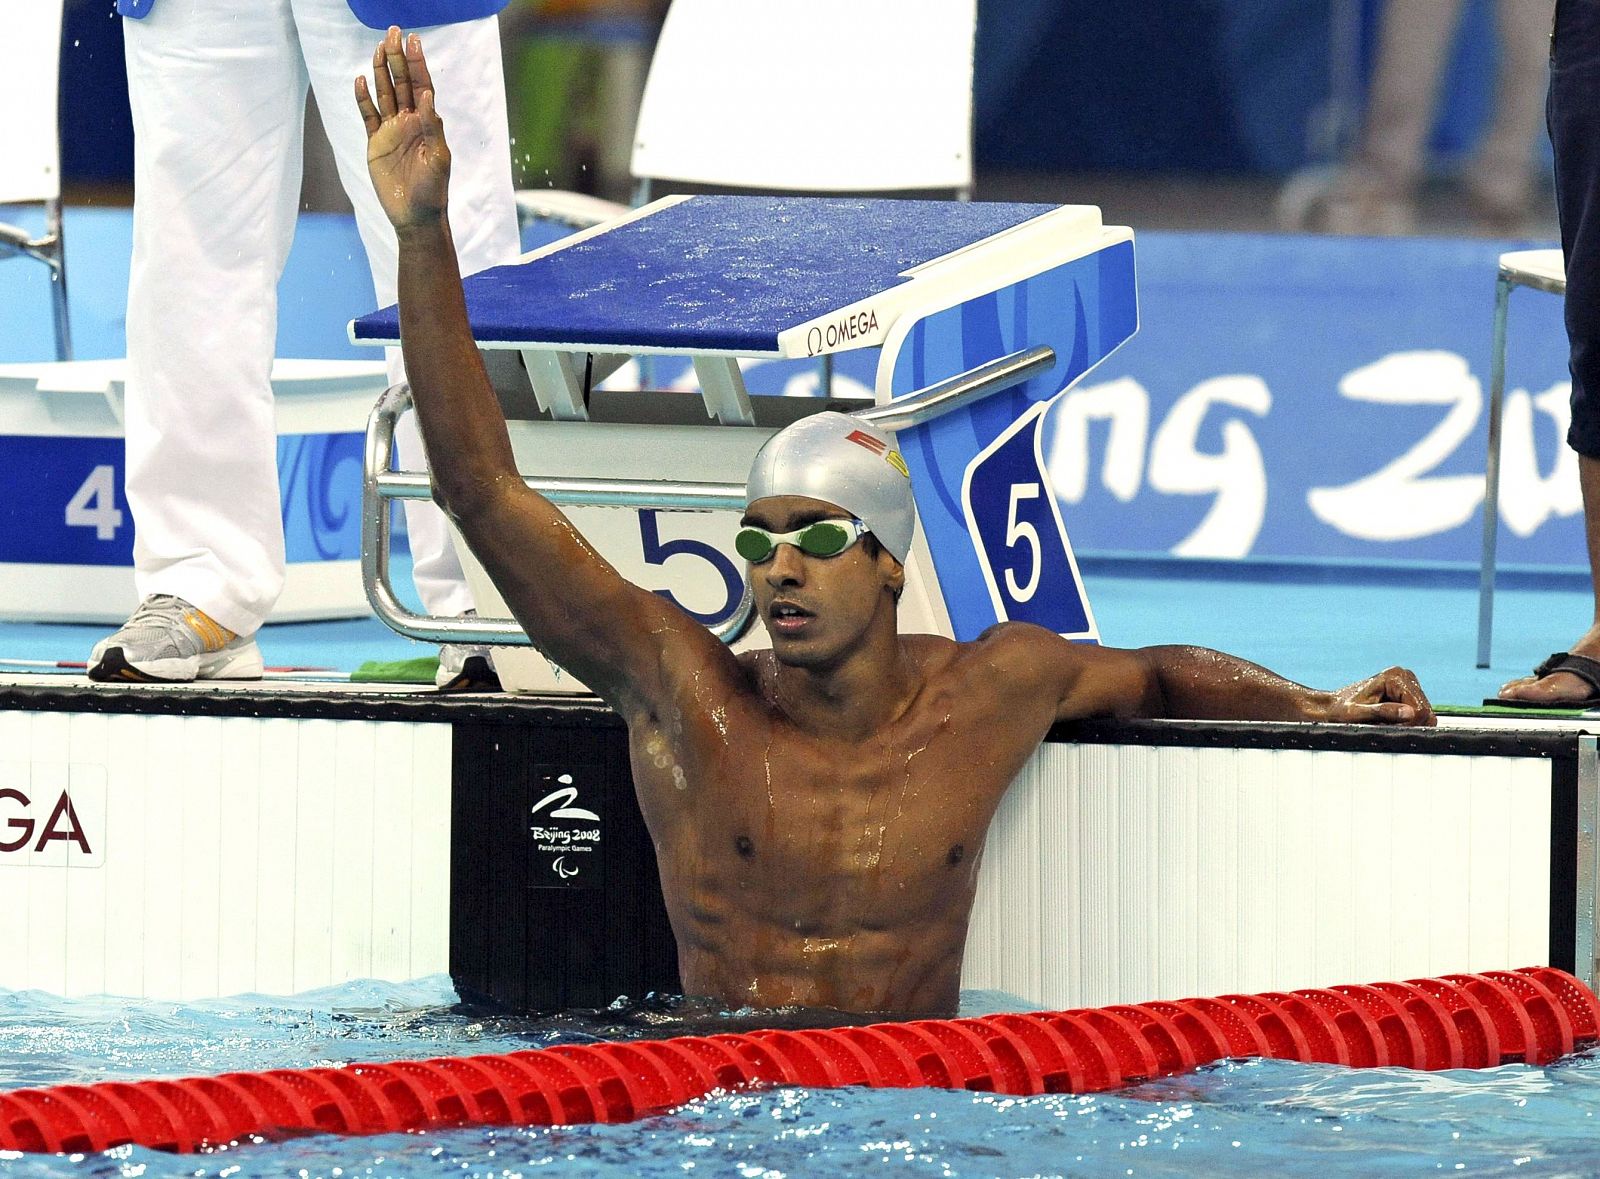 El nadador canario Enhamed Enhamed saluda tras conseguir su tercer oro.